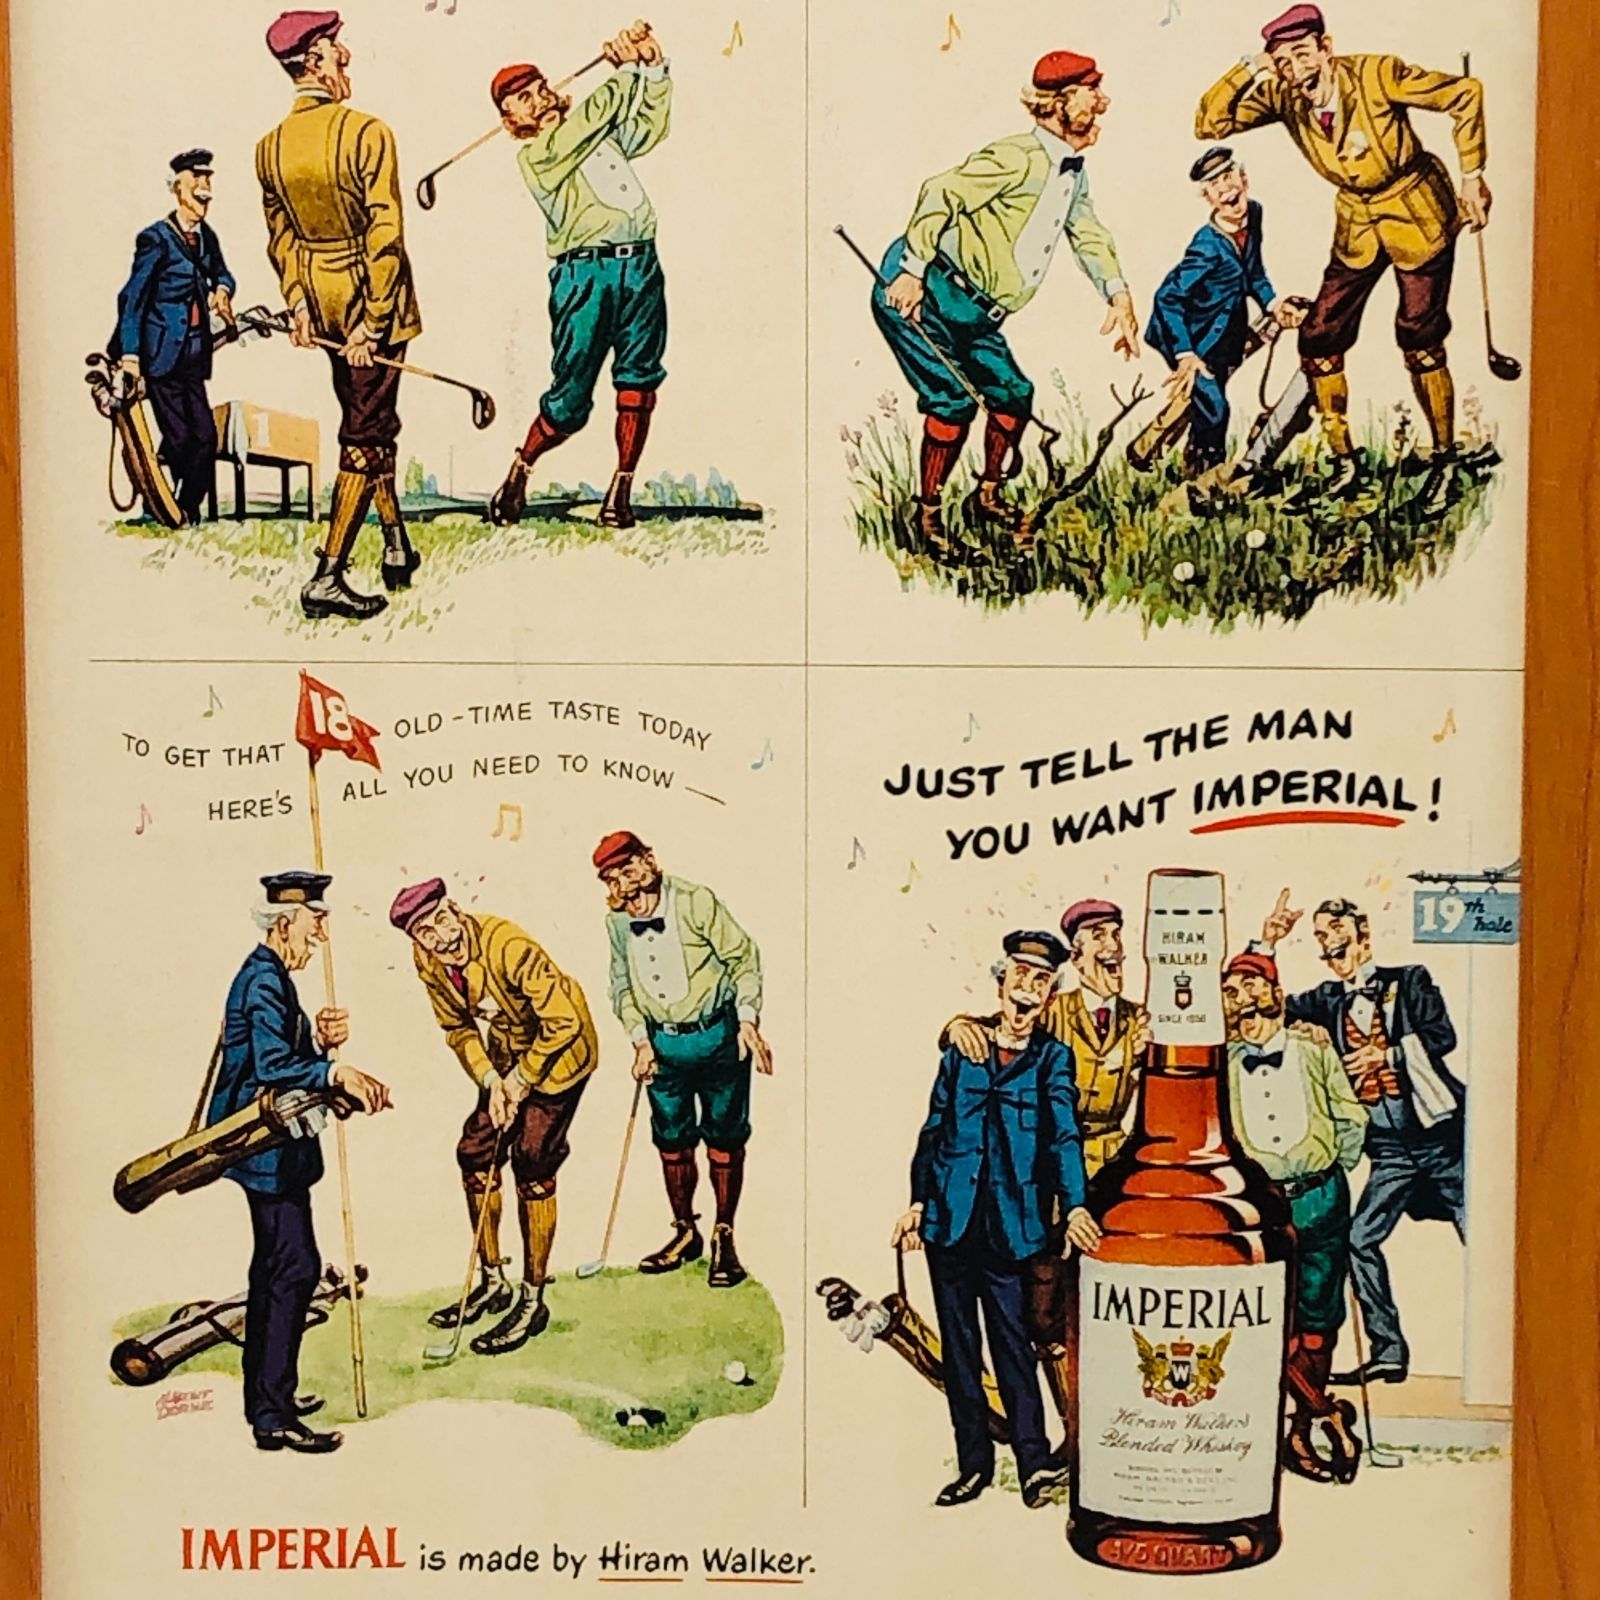 ビンテージ 広告 ポスター フレーム付 当時物 『 インペリアル ウイスキー (Imperial) 』 1950's オリジナル アメリカ 輸入雑貨 ヴィンテージ  雑誌 アドバタイジング レトロ ( AZ1723 ) - メルカリ